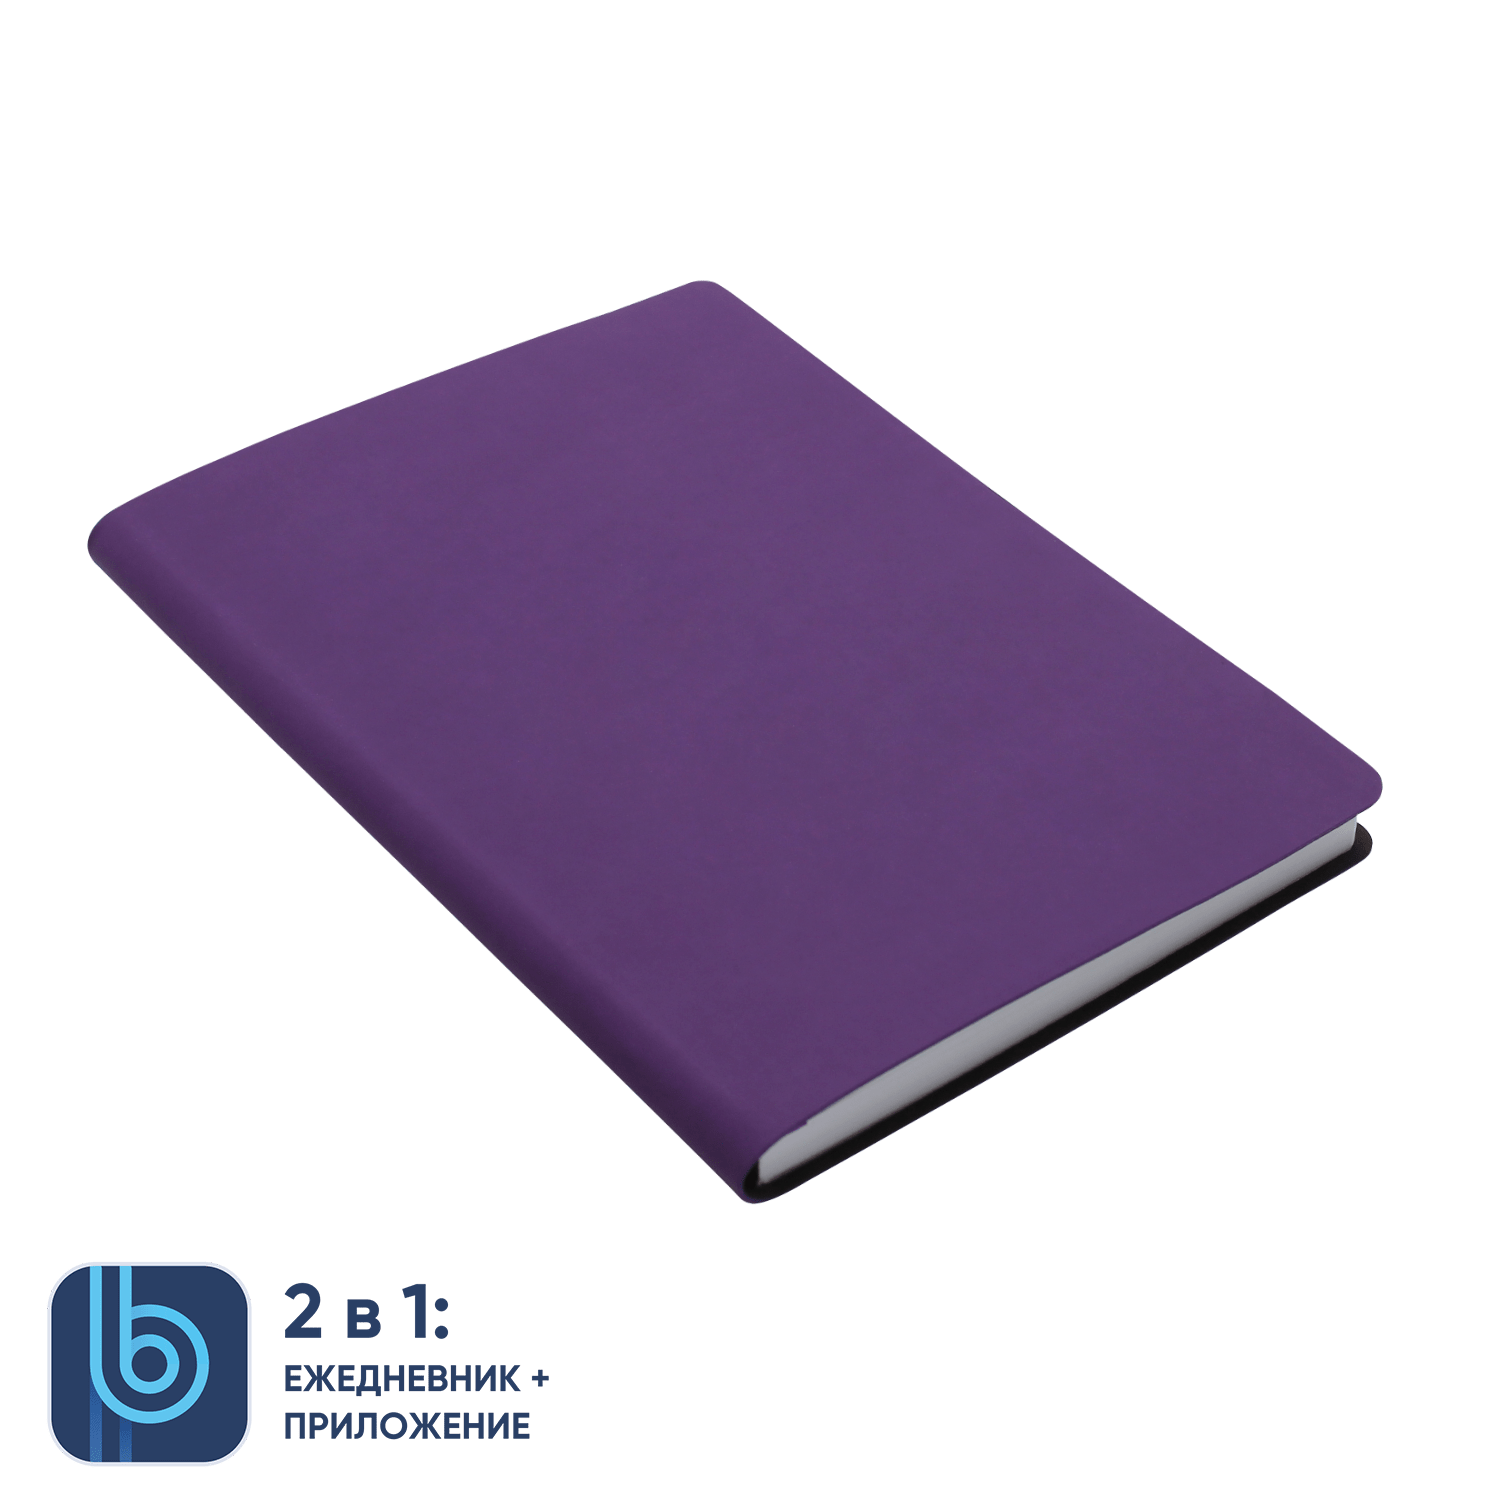 Ежедневник Bplanner.01 violet, фиолетовый